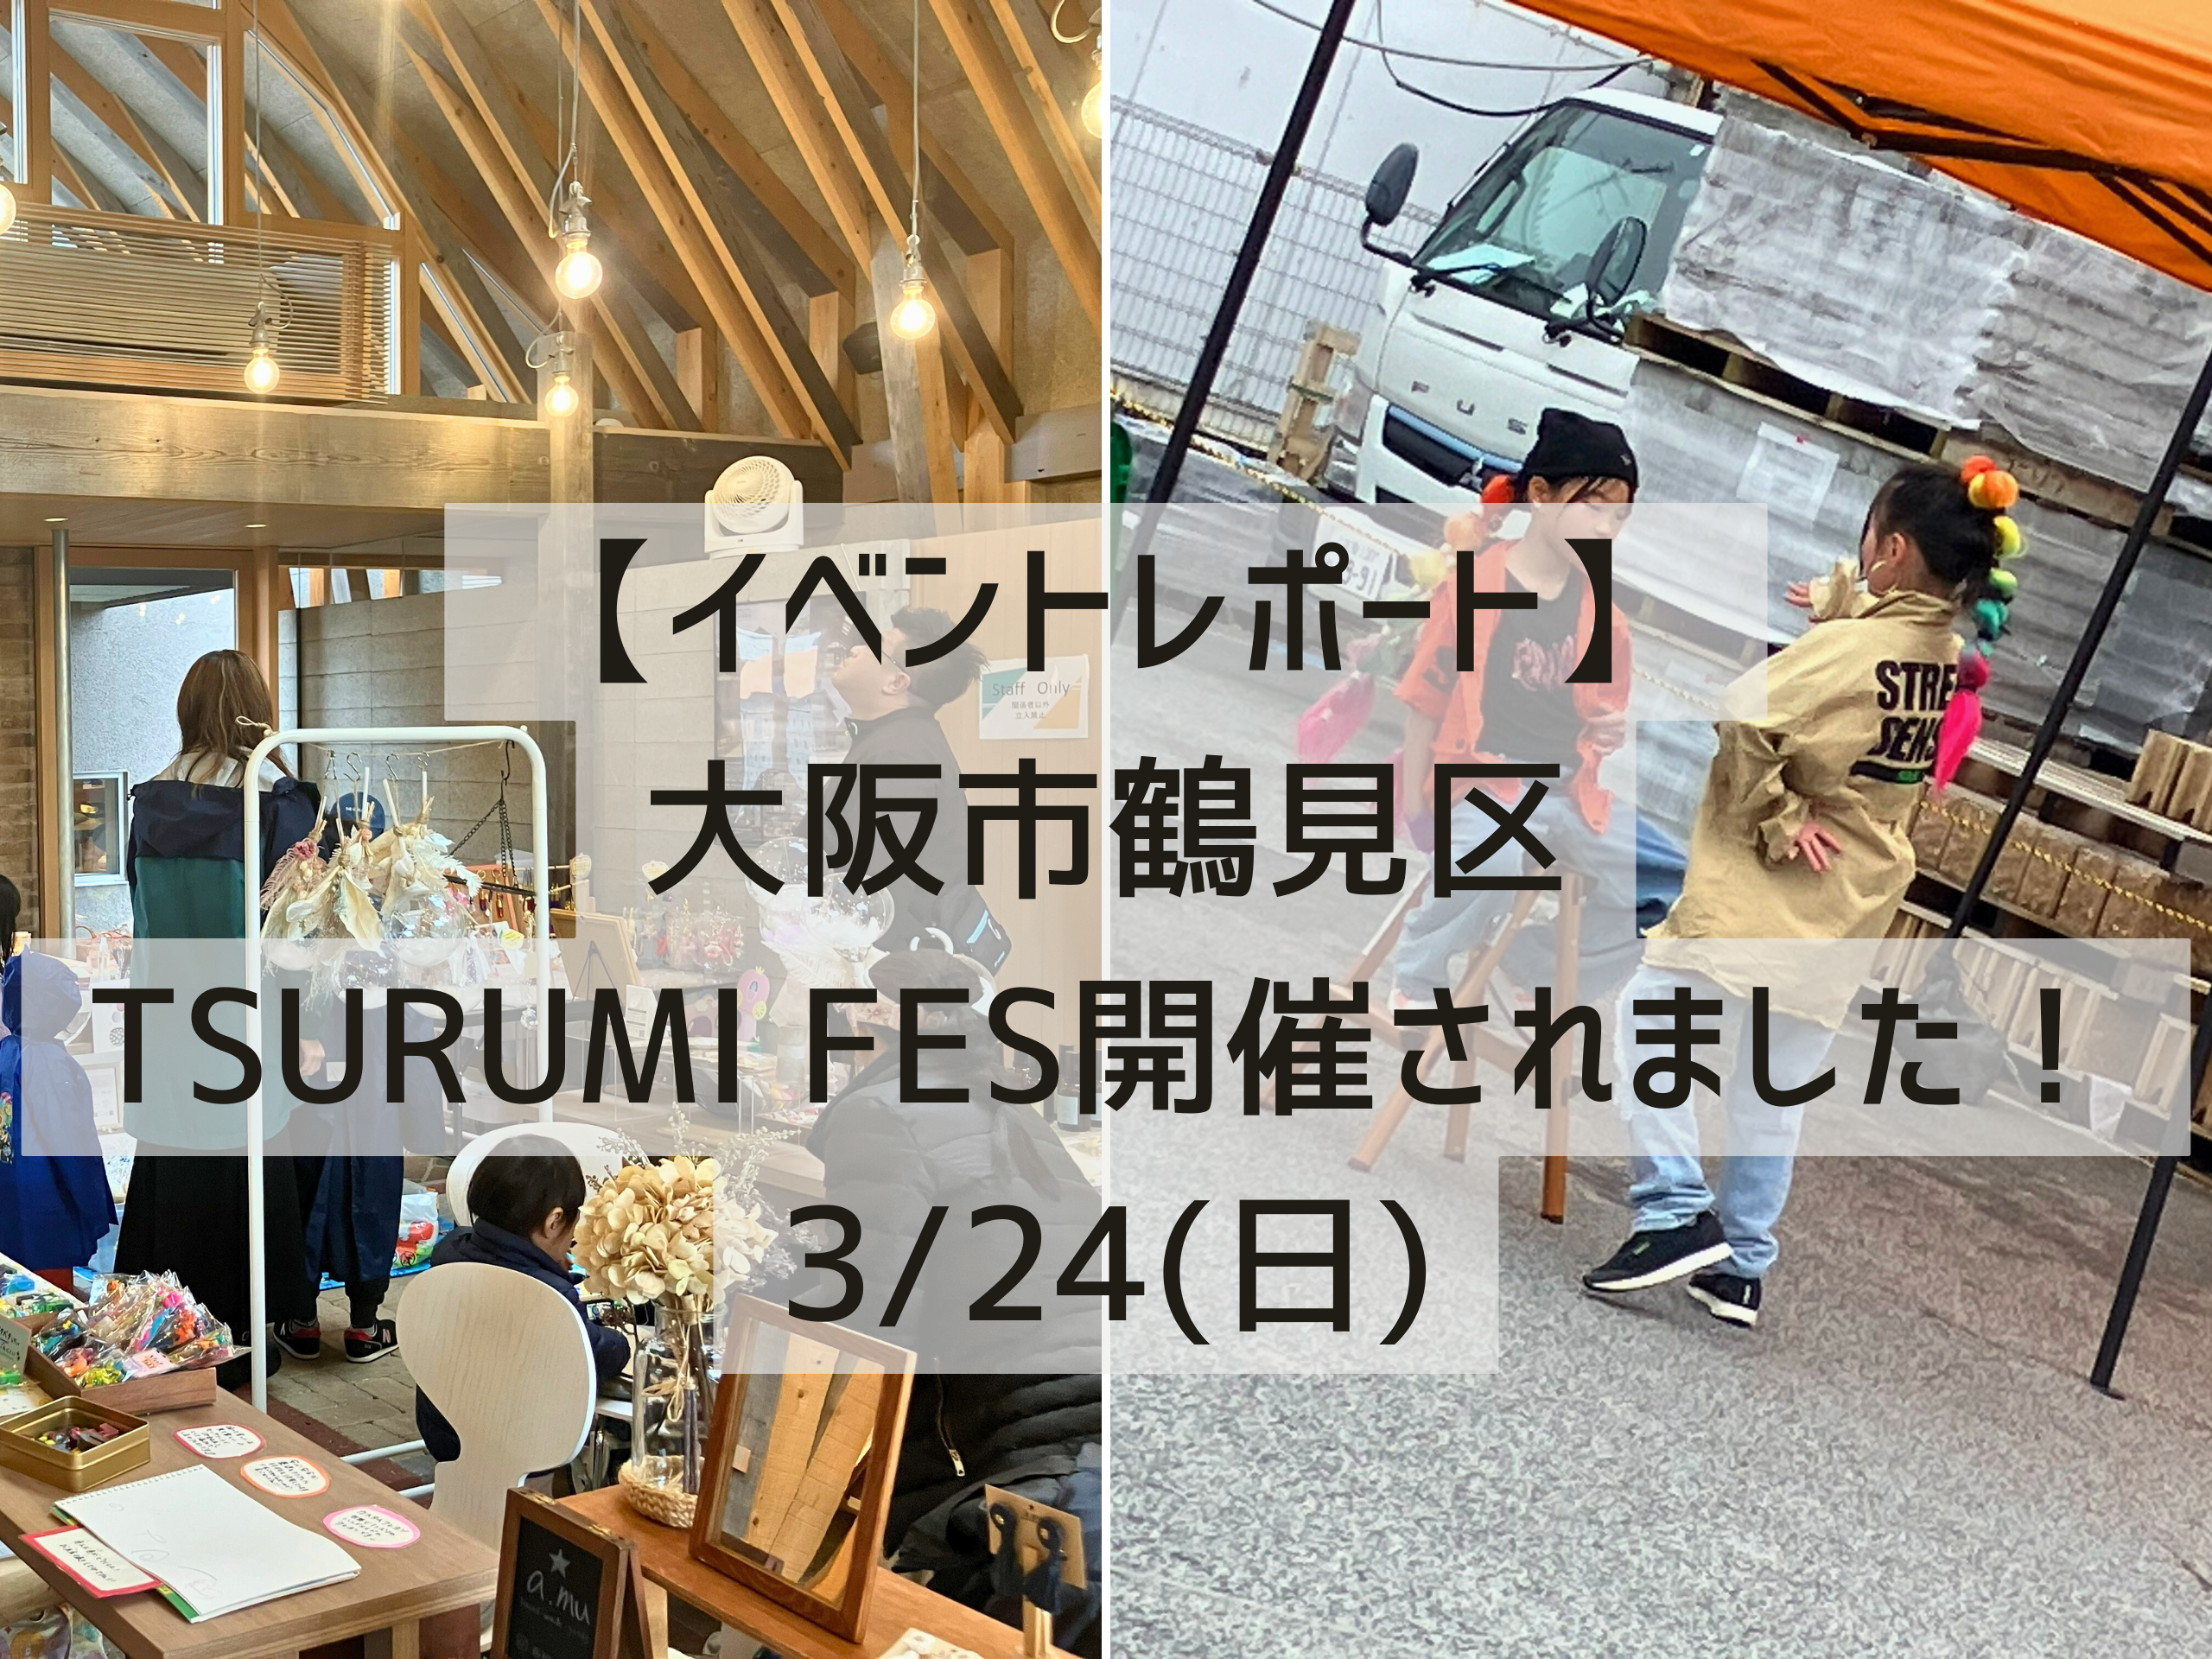 【イベントレポート】家族で楽しむイベントTSURUMI FES【大阪市鶴見区】